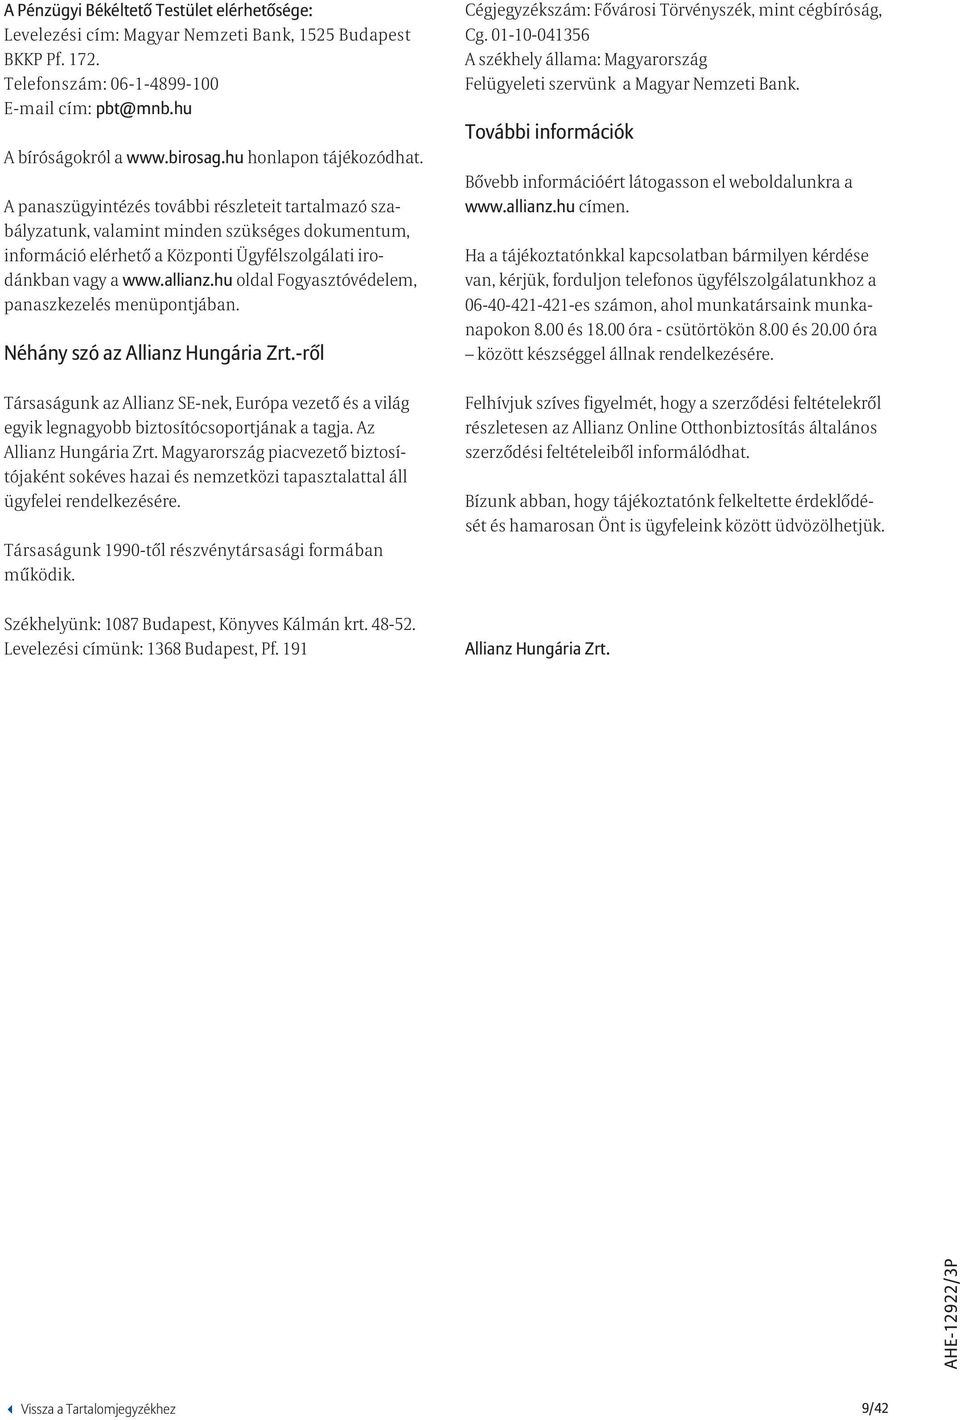 allianz.hu oldal Fogyasztóvédelem, panaszkezelés menüpontjában. Néhány szó az Allianz Hungária Zrt.